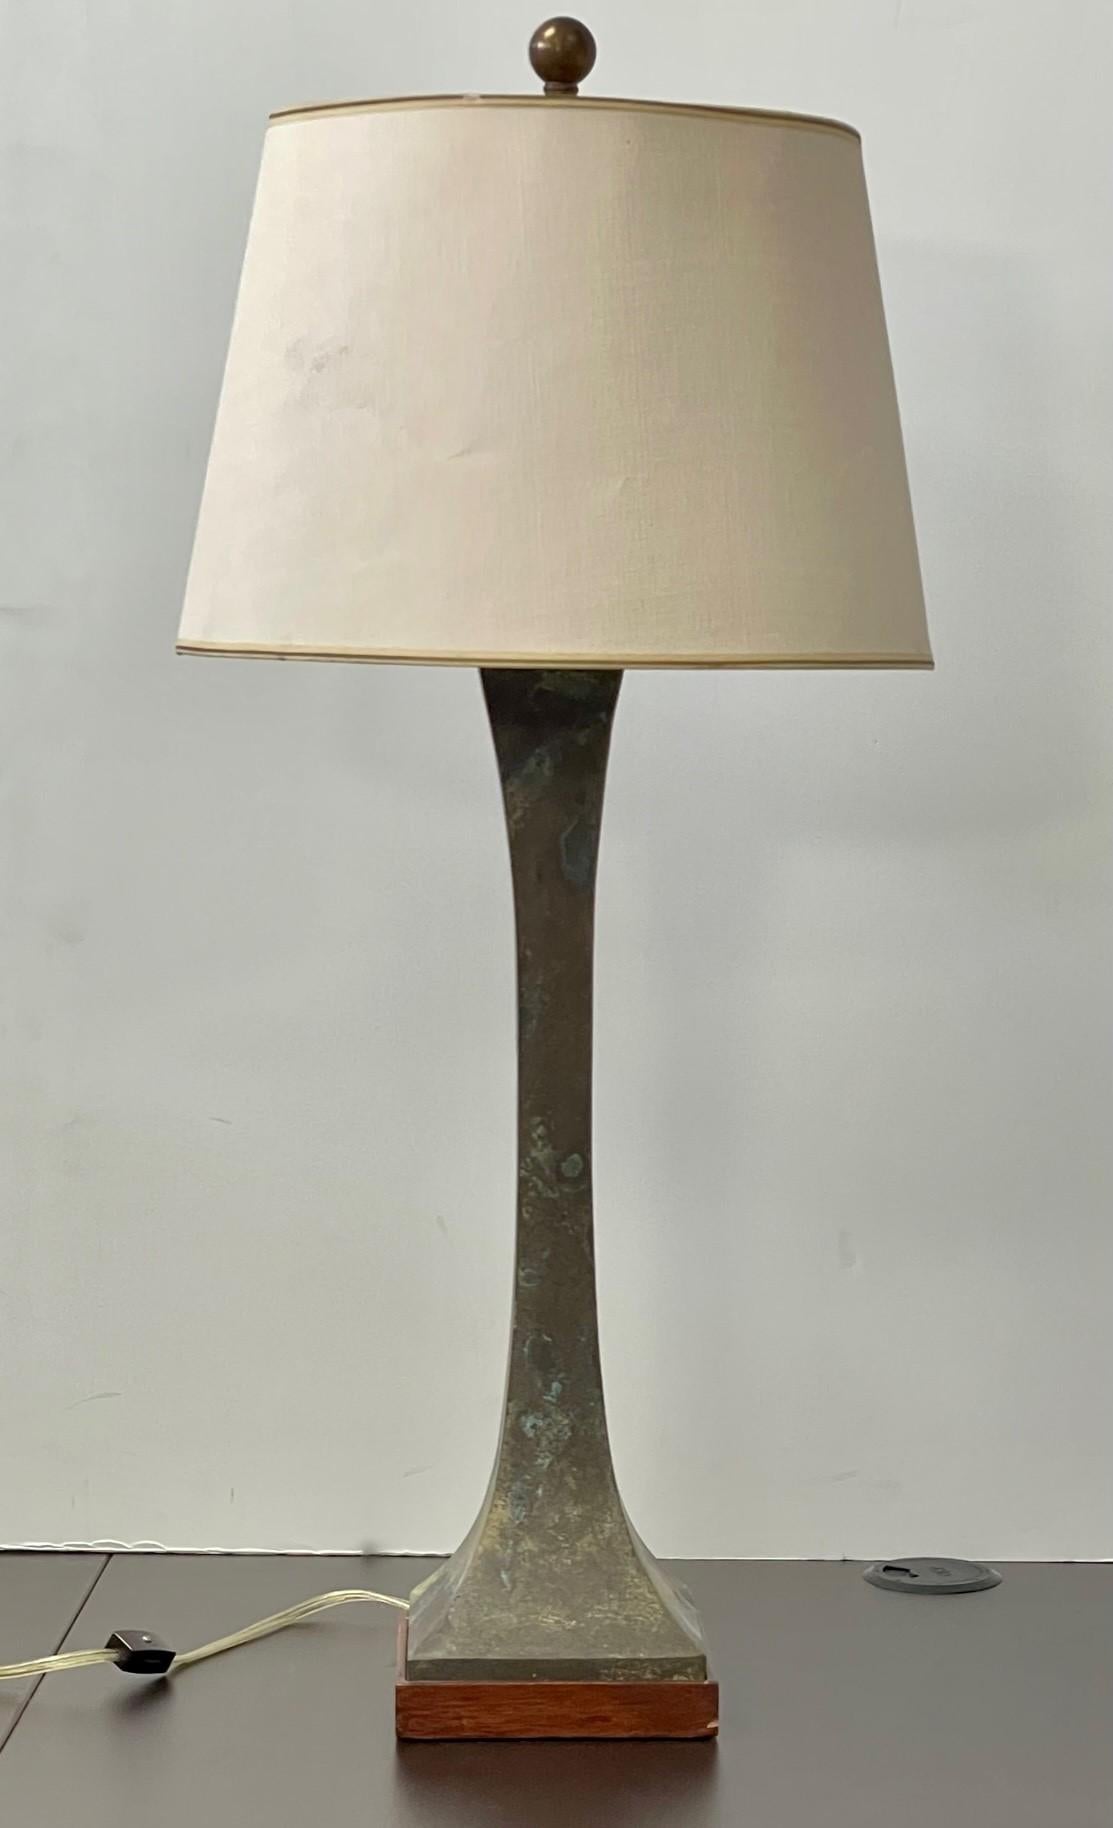 Lampes de table carrées sculpturales en bronze, en forme de sablier, conçues par Stewart Ross James pour Hansen Lighting. Vendu par lot de 2. Les bases en bronze patiné unique présentent une patine richement variée avec des teintes de brun, de